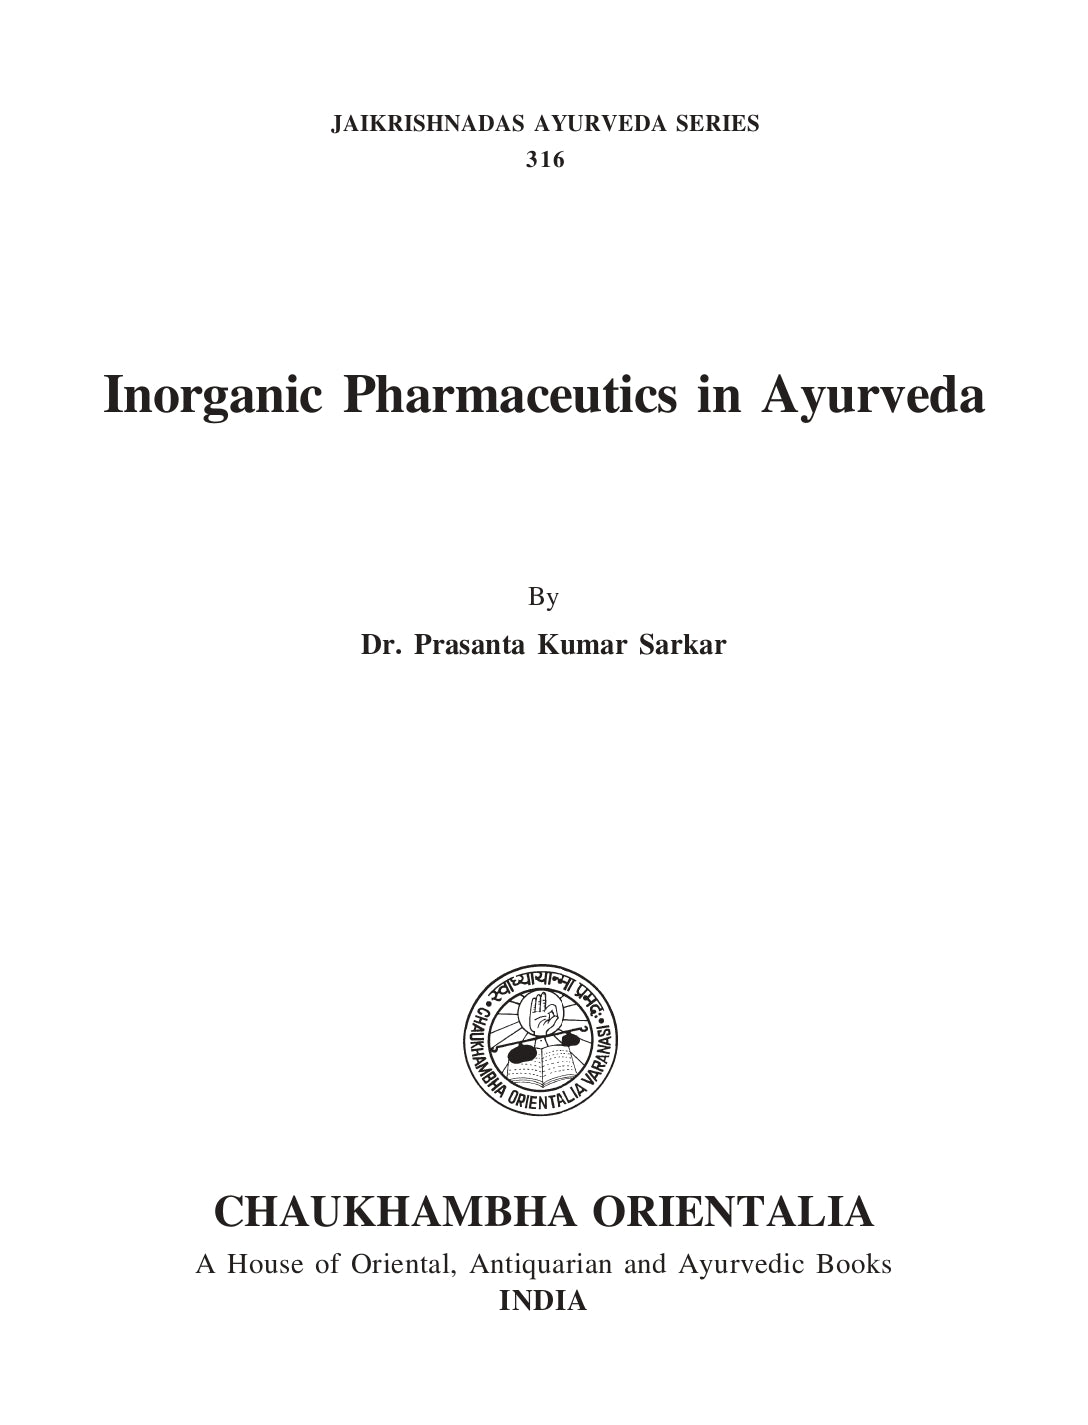 Chaukhambha Orientalia Inorganic Pharmaceutics in Ayurveda